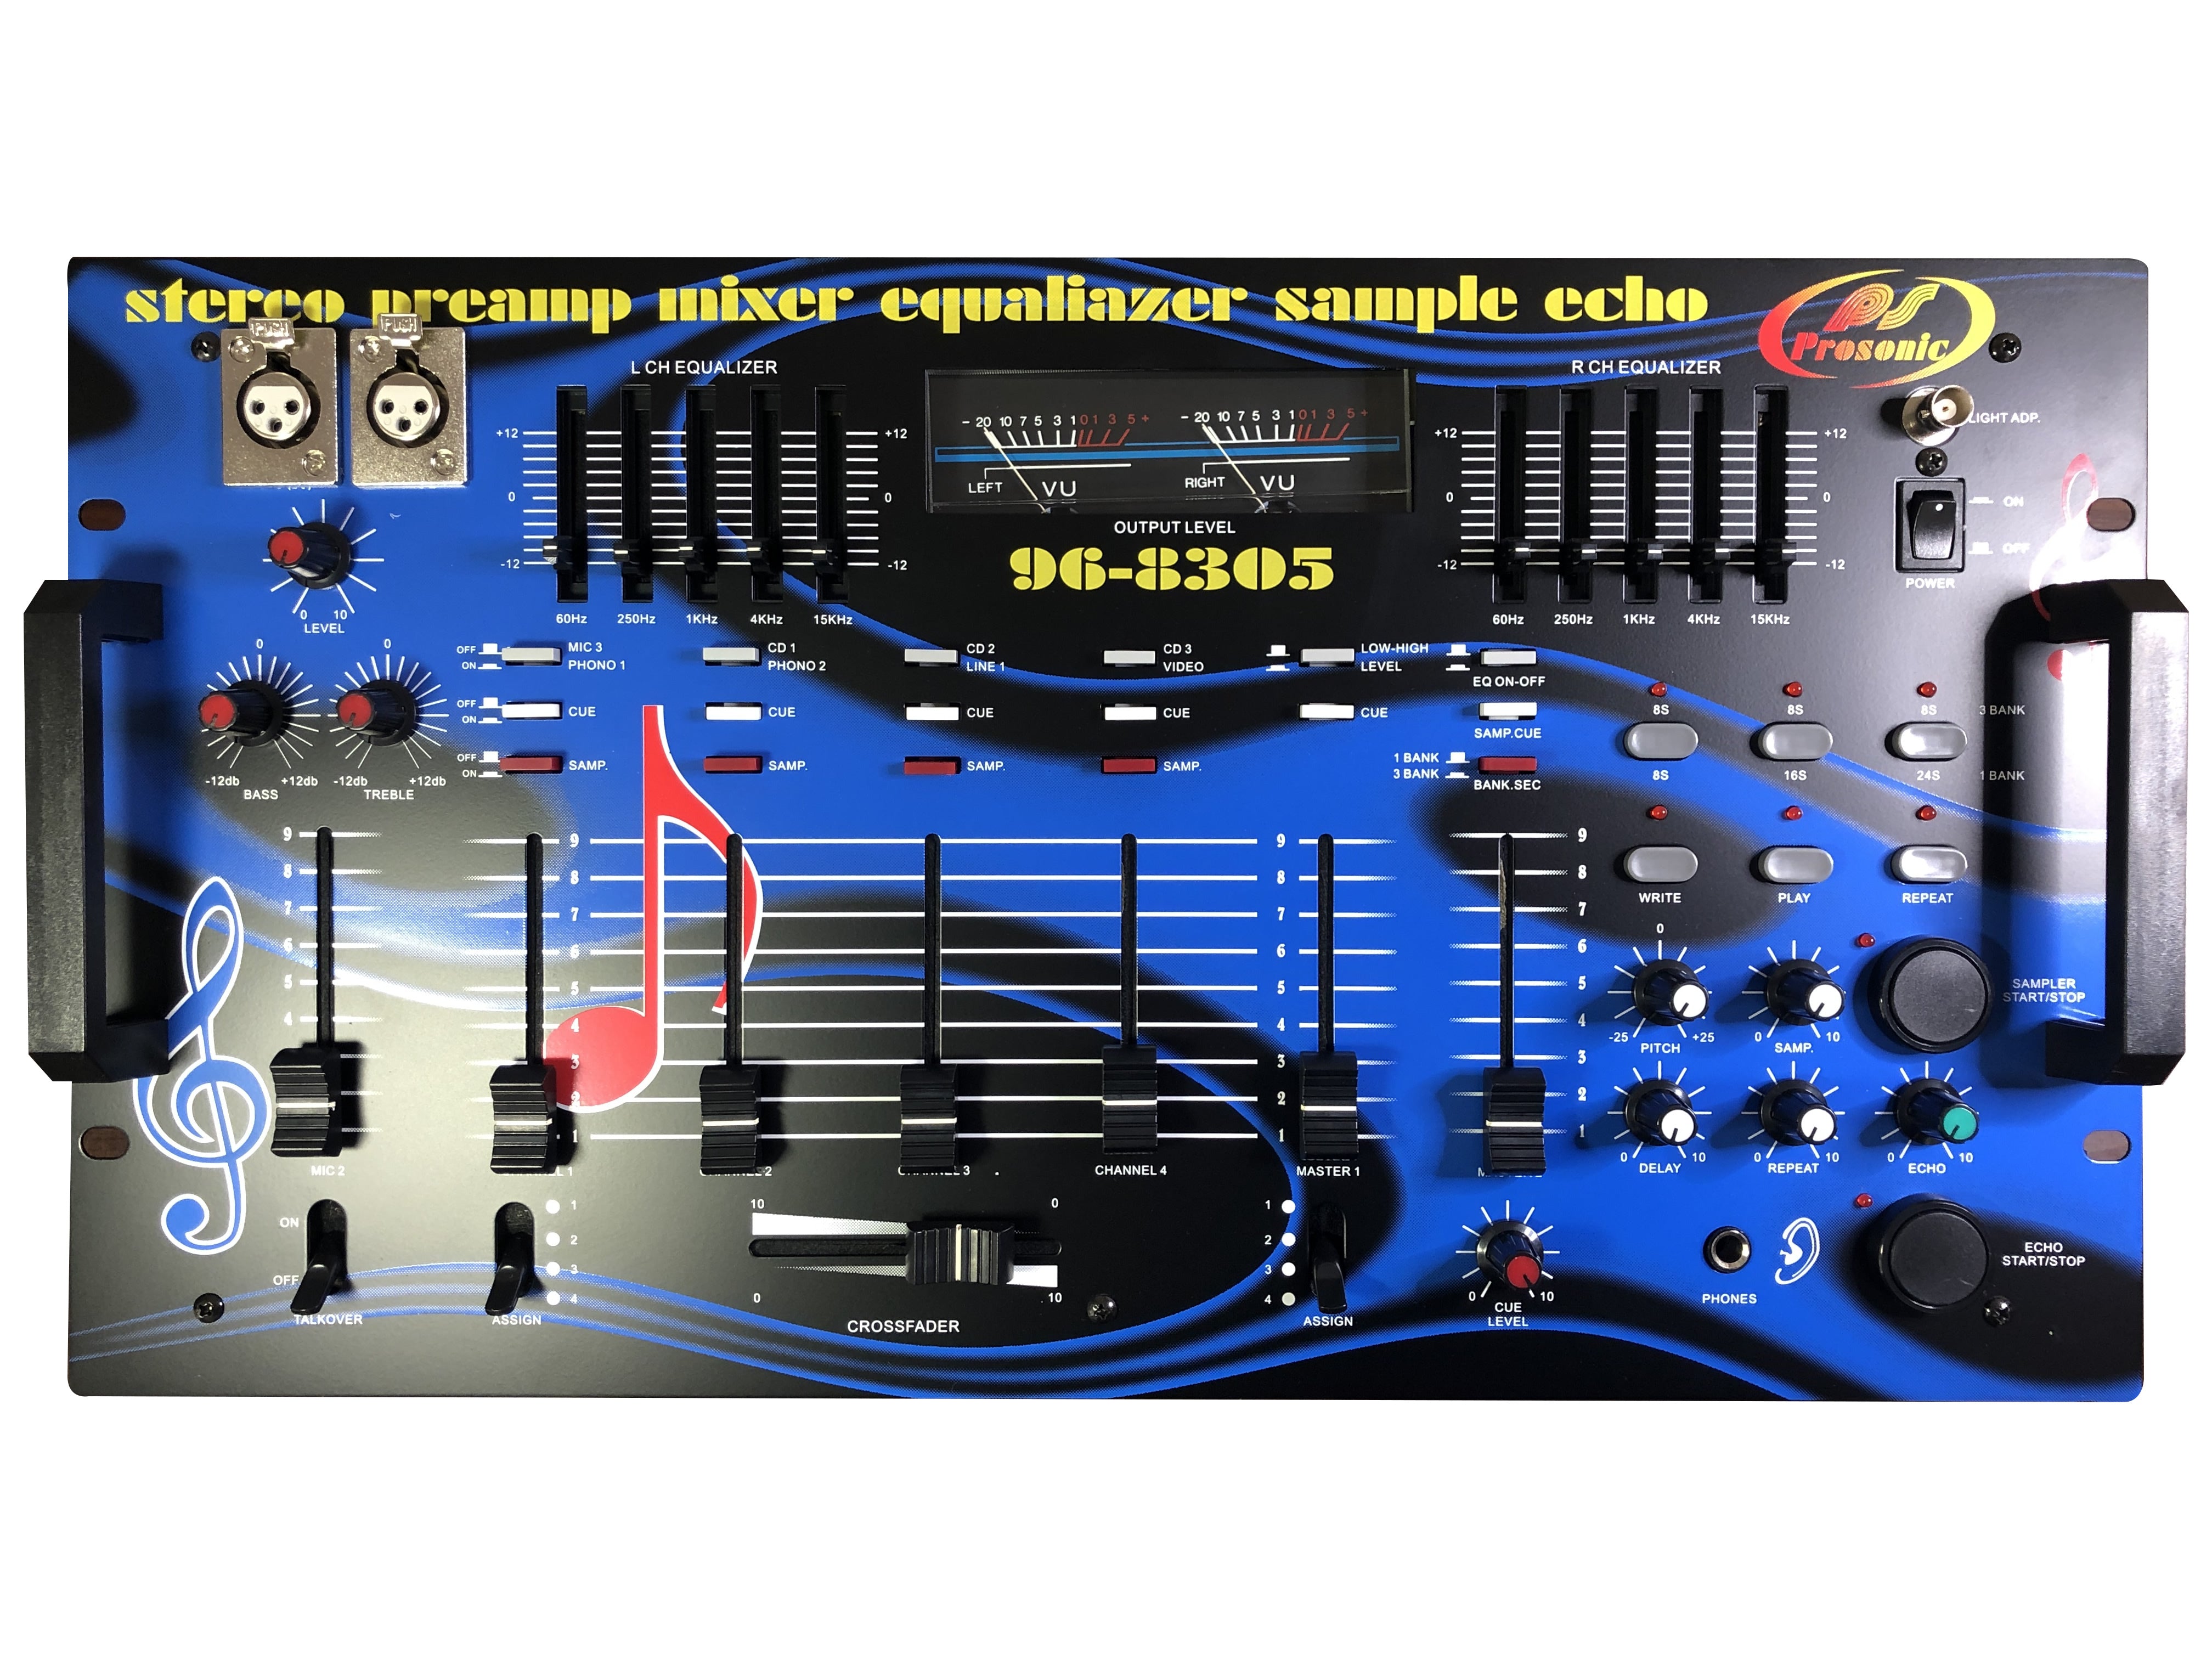 96-8305 Professional DJ Mixer